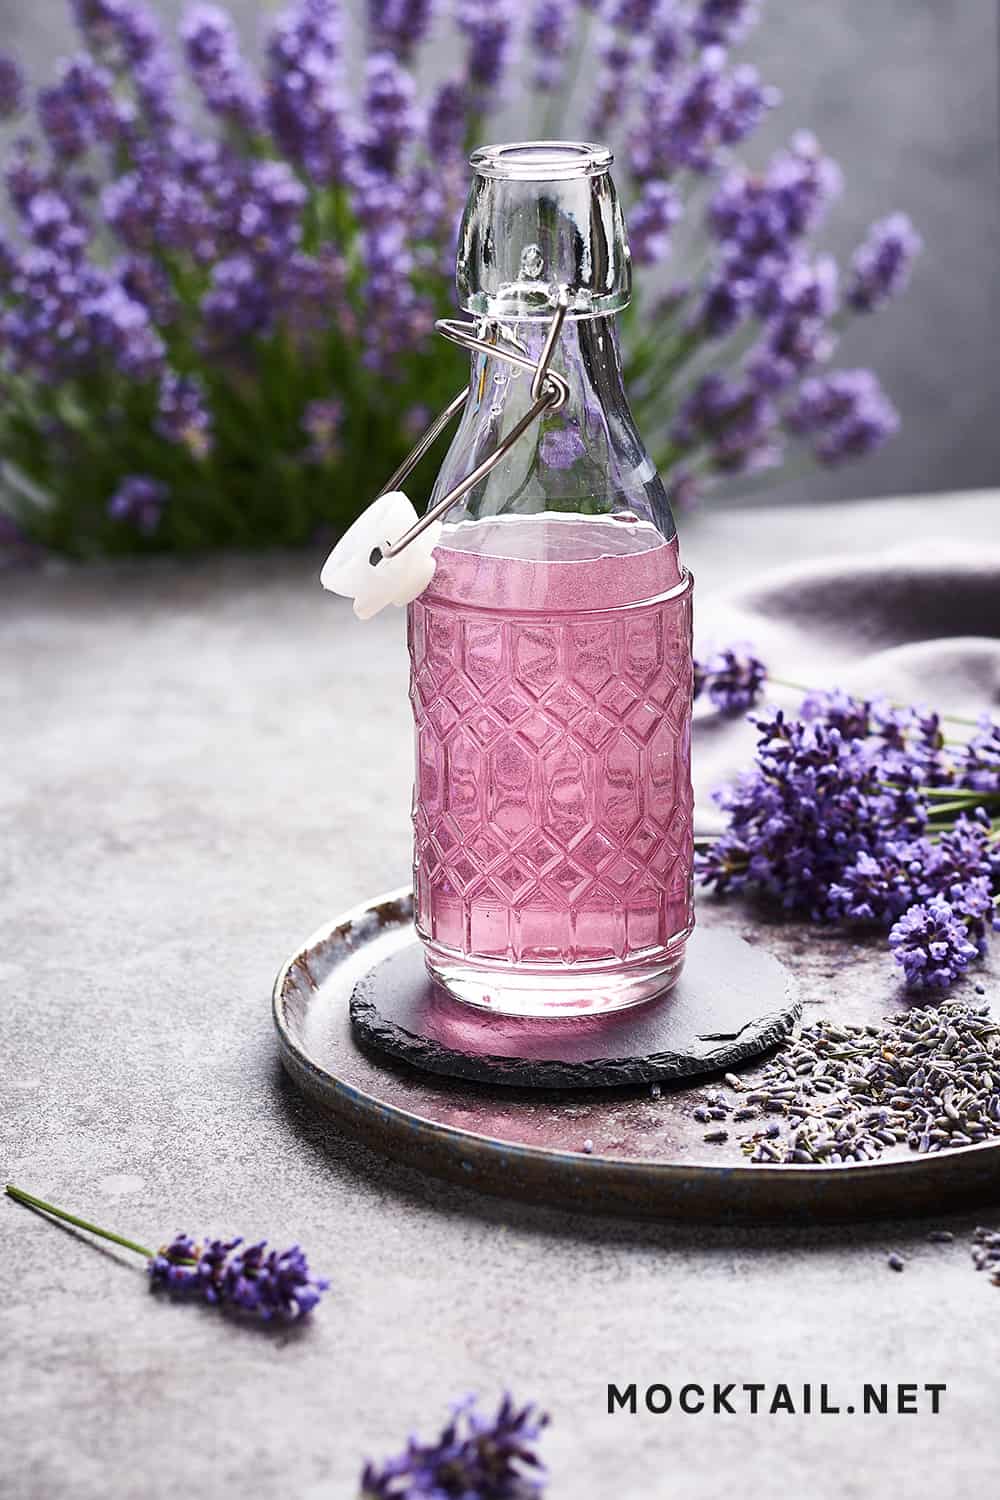 Ingredients in Lavender Simple Syrup